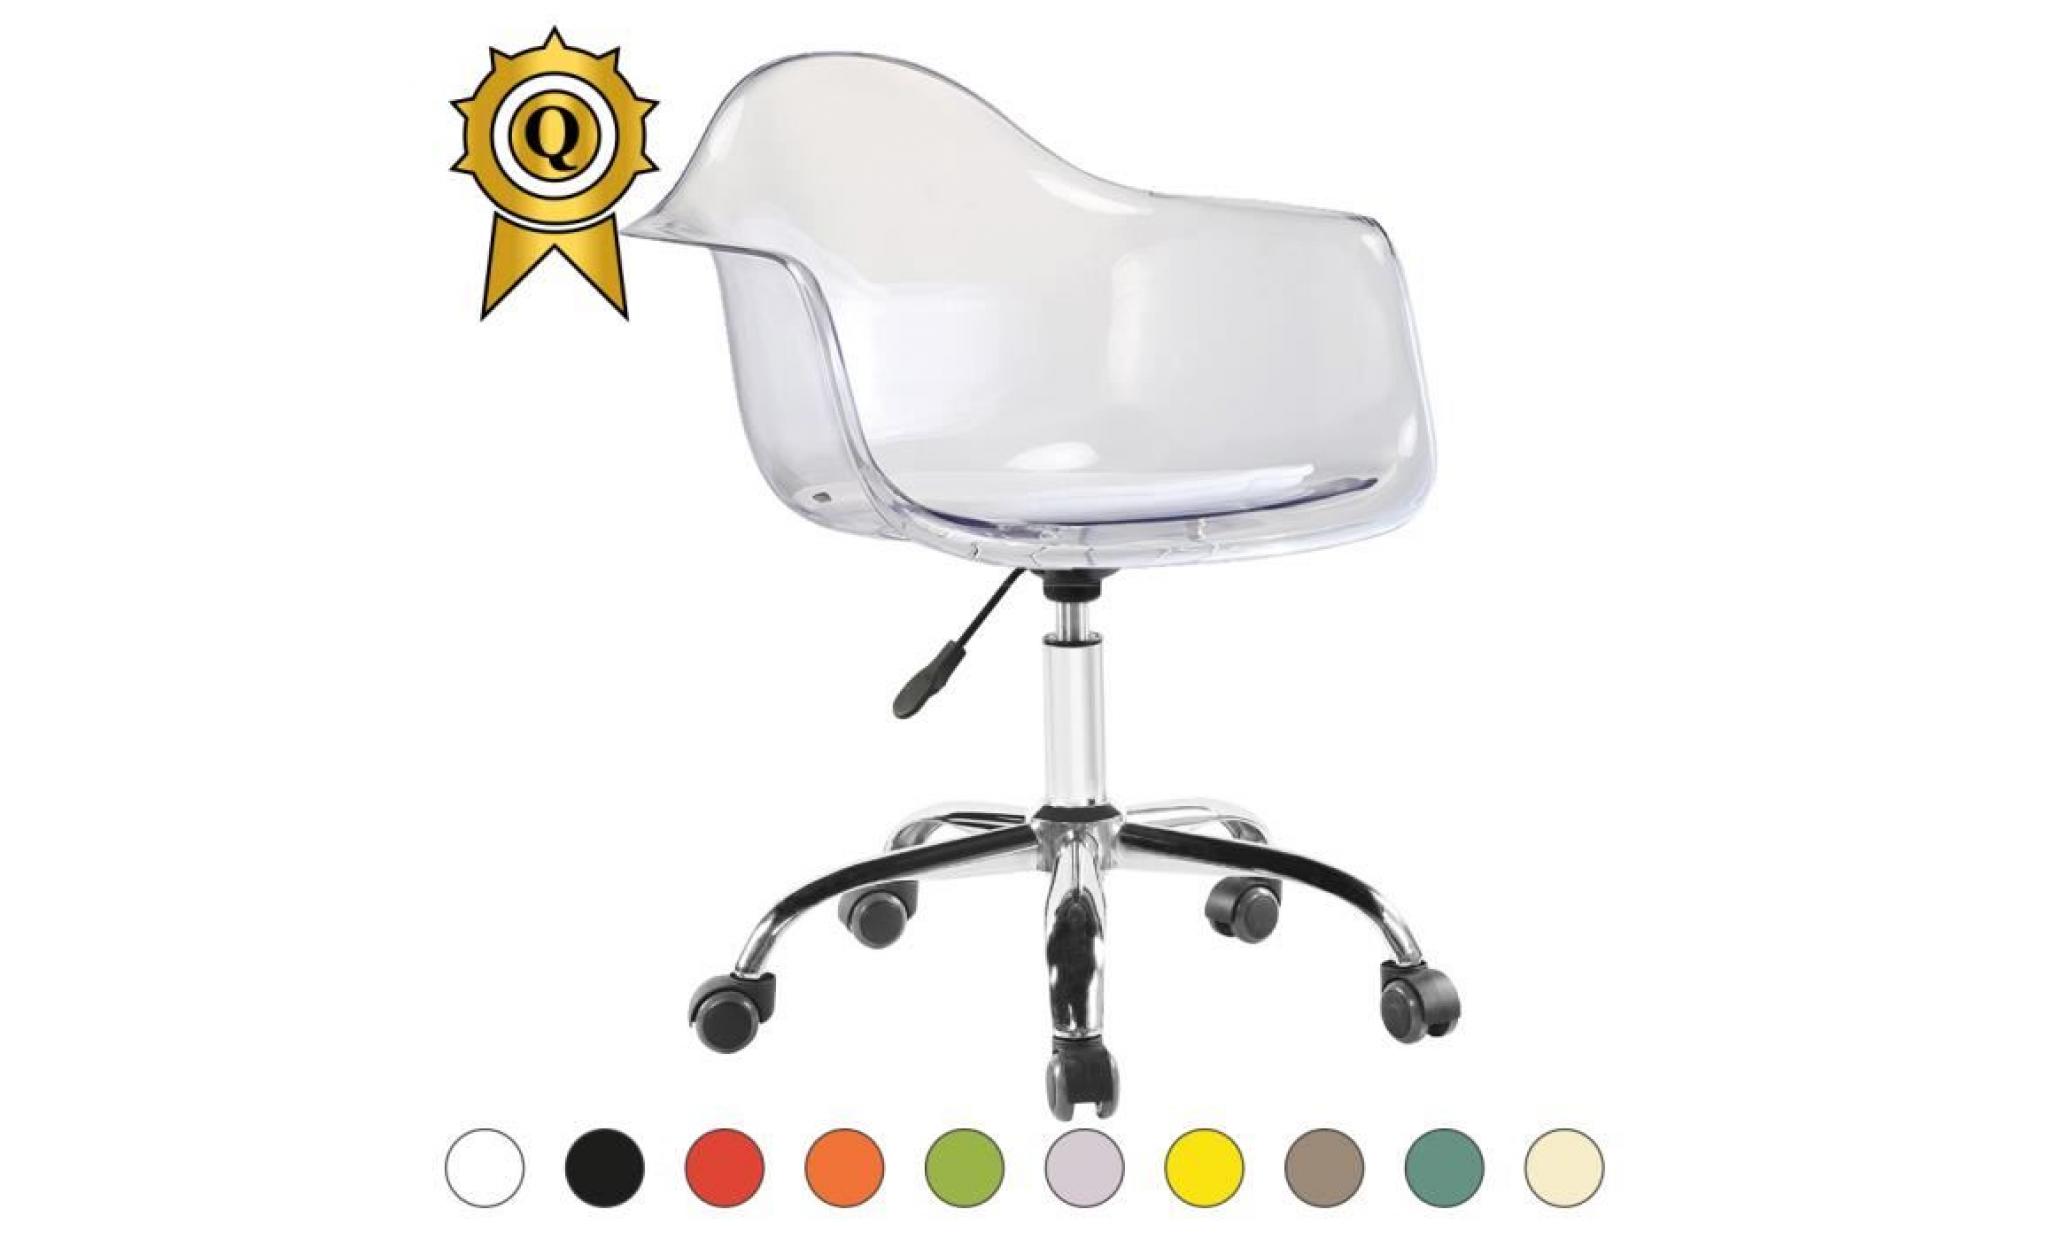 1 x fauteuil bureau style eames eiffel daw roulettes chrome pivotant assise reglable ivoire mobistyl®